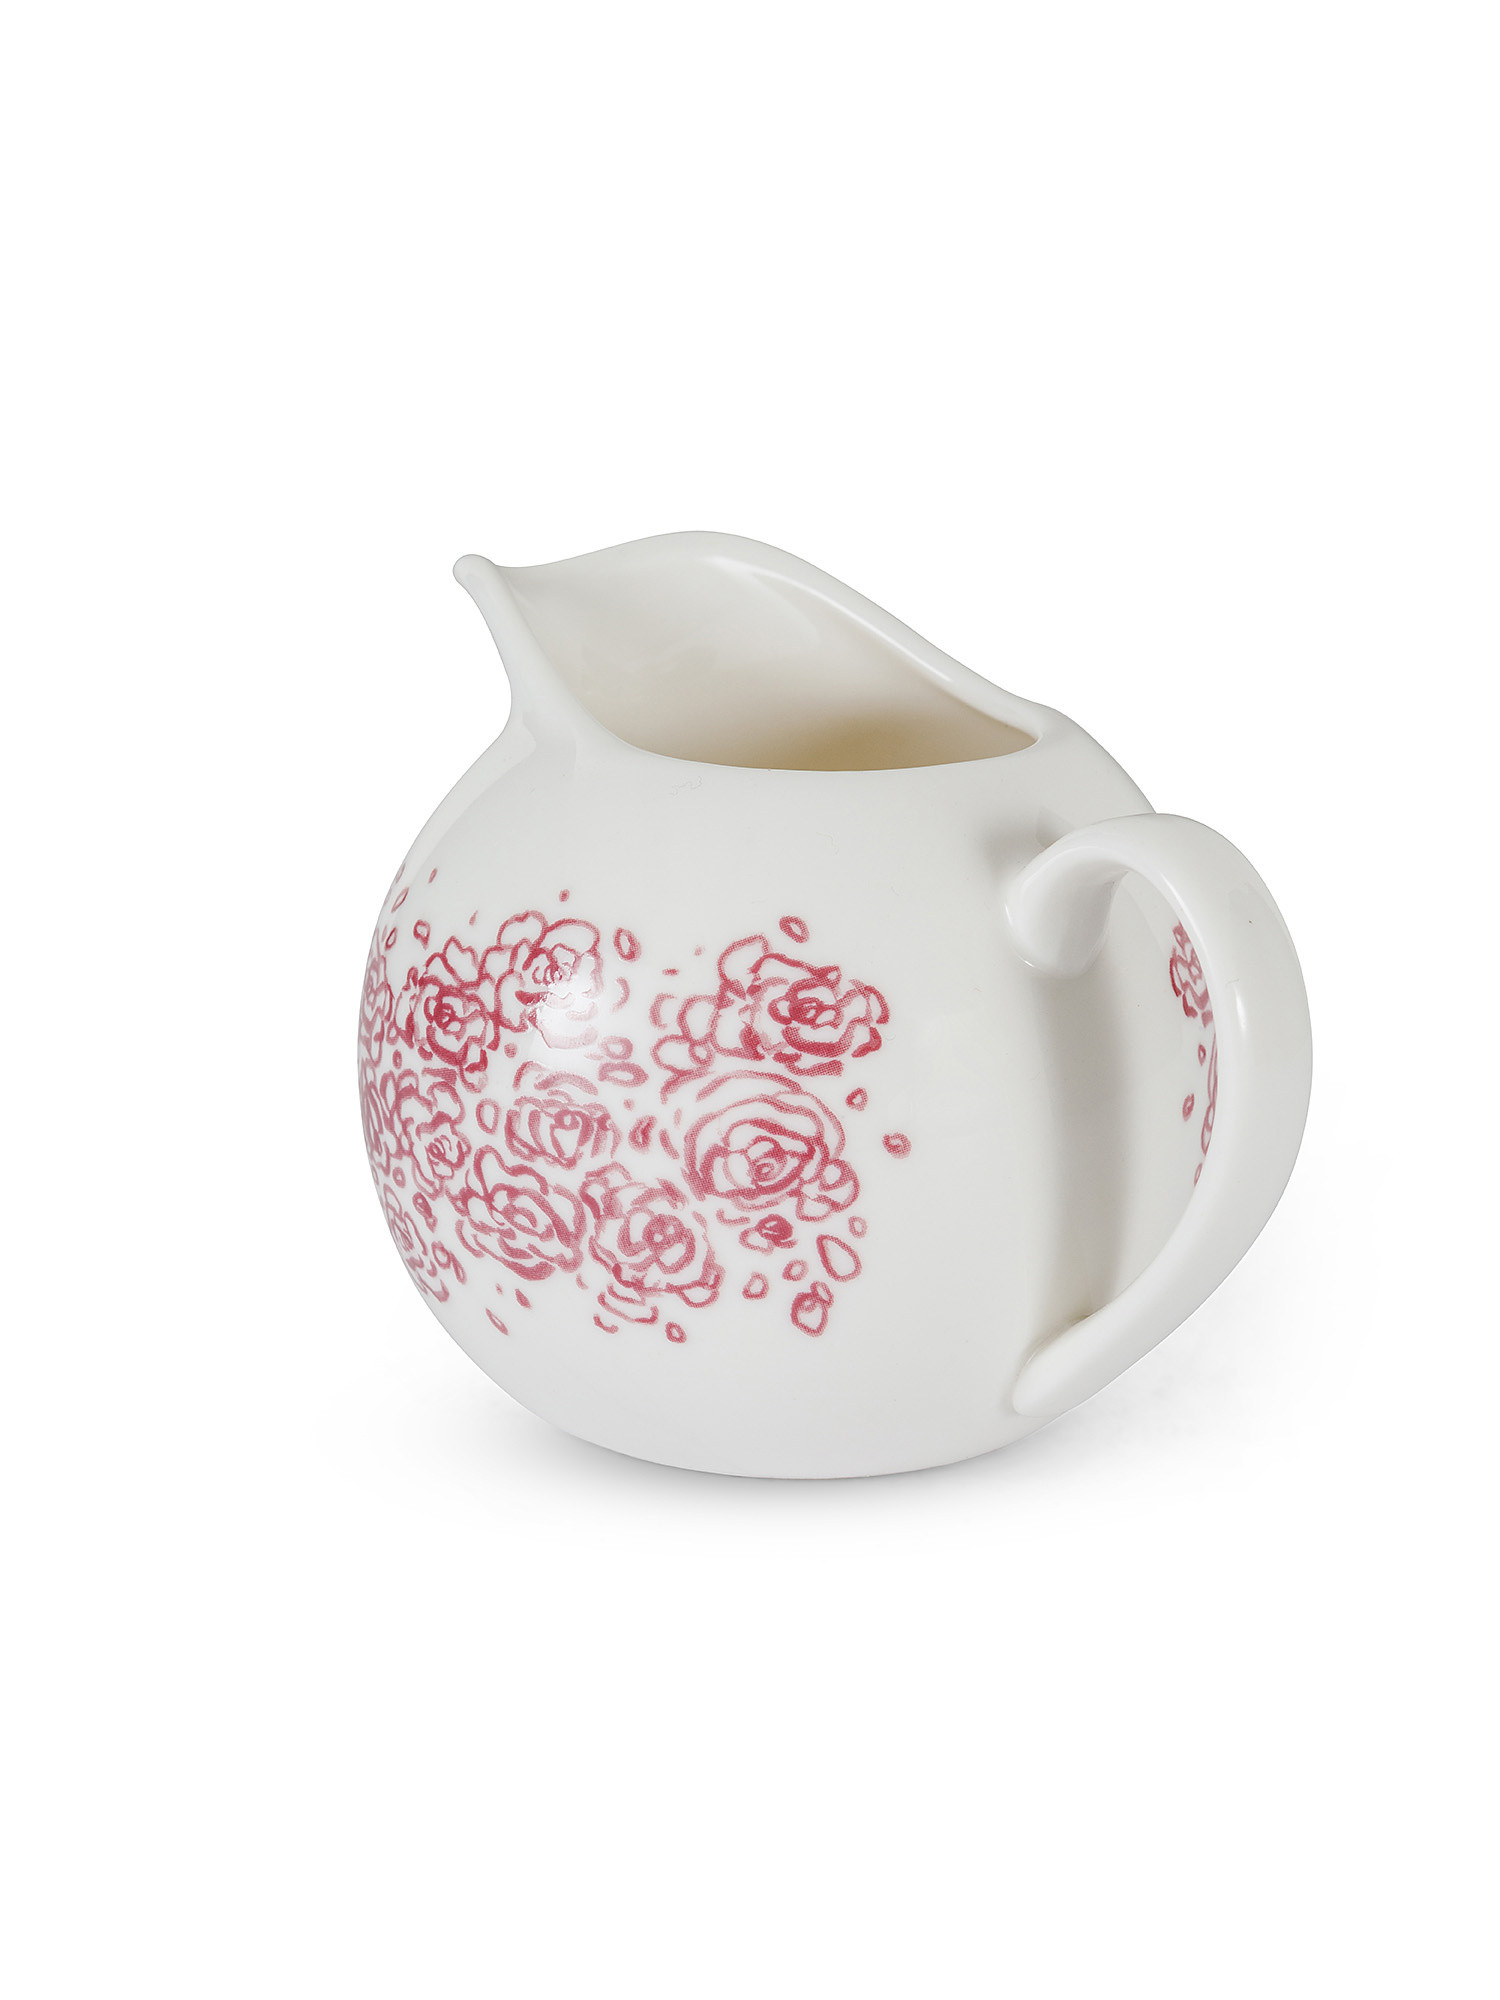 New bone china milk jug with roses decoration, White, large image number 1